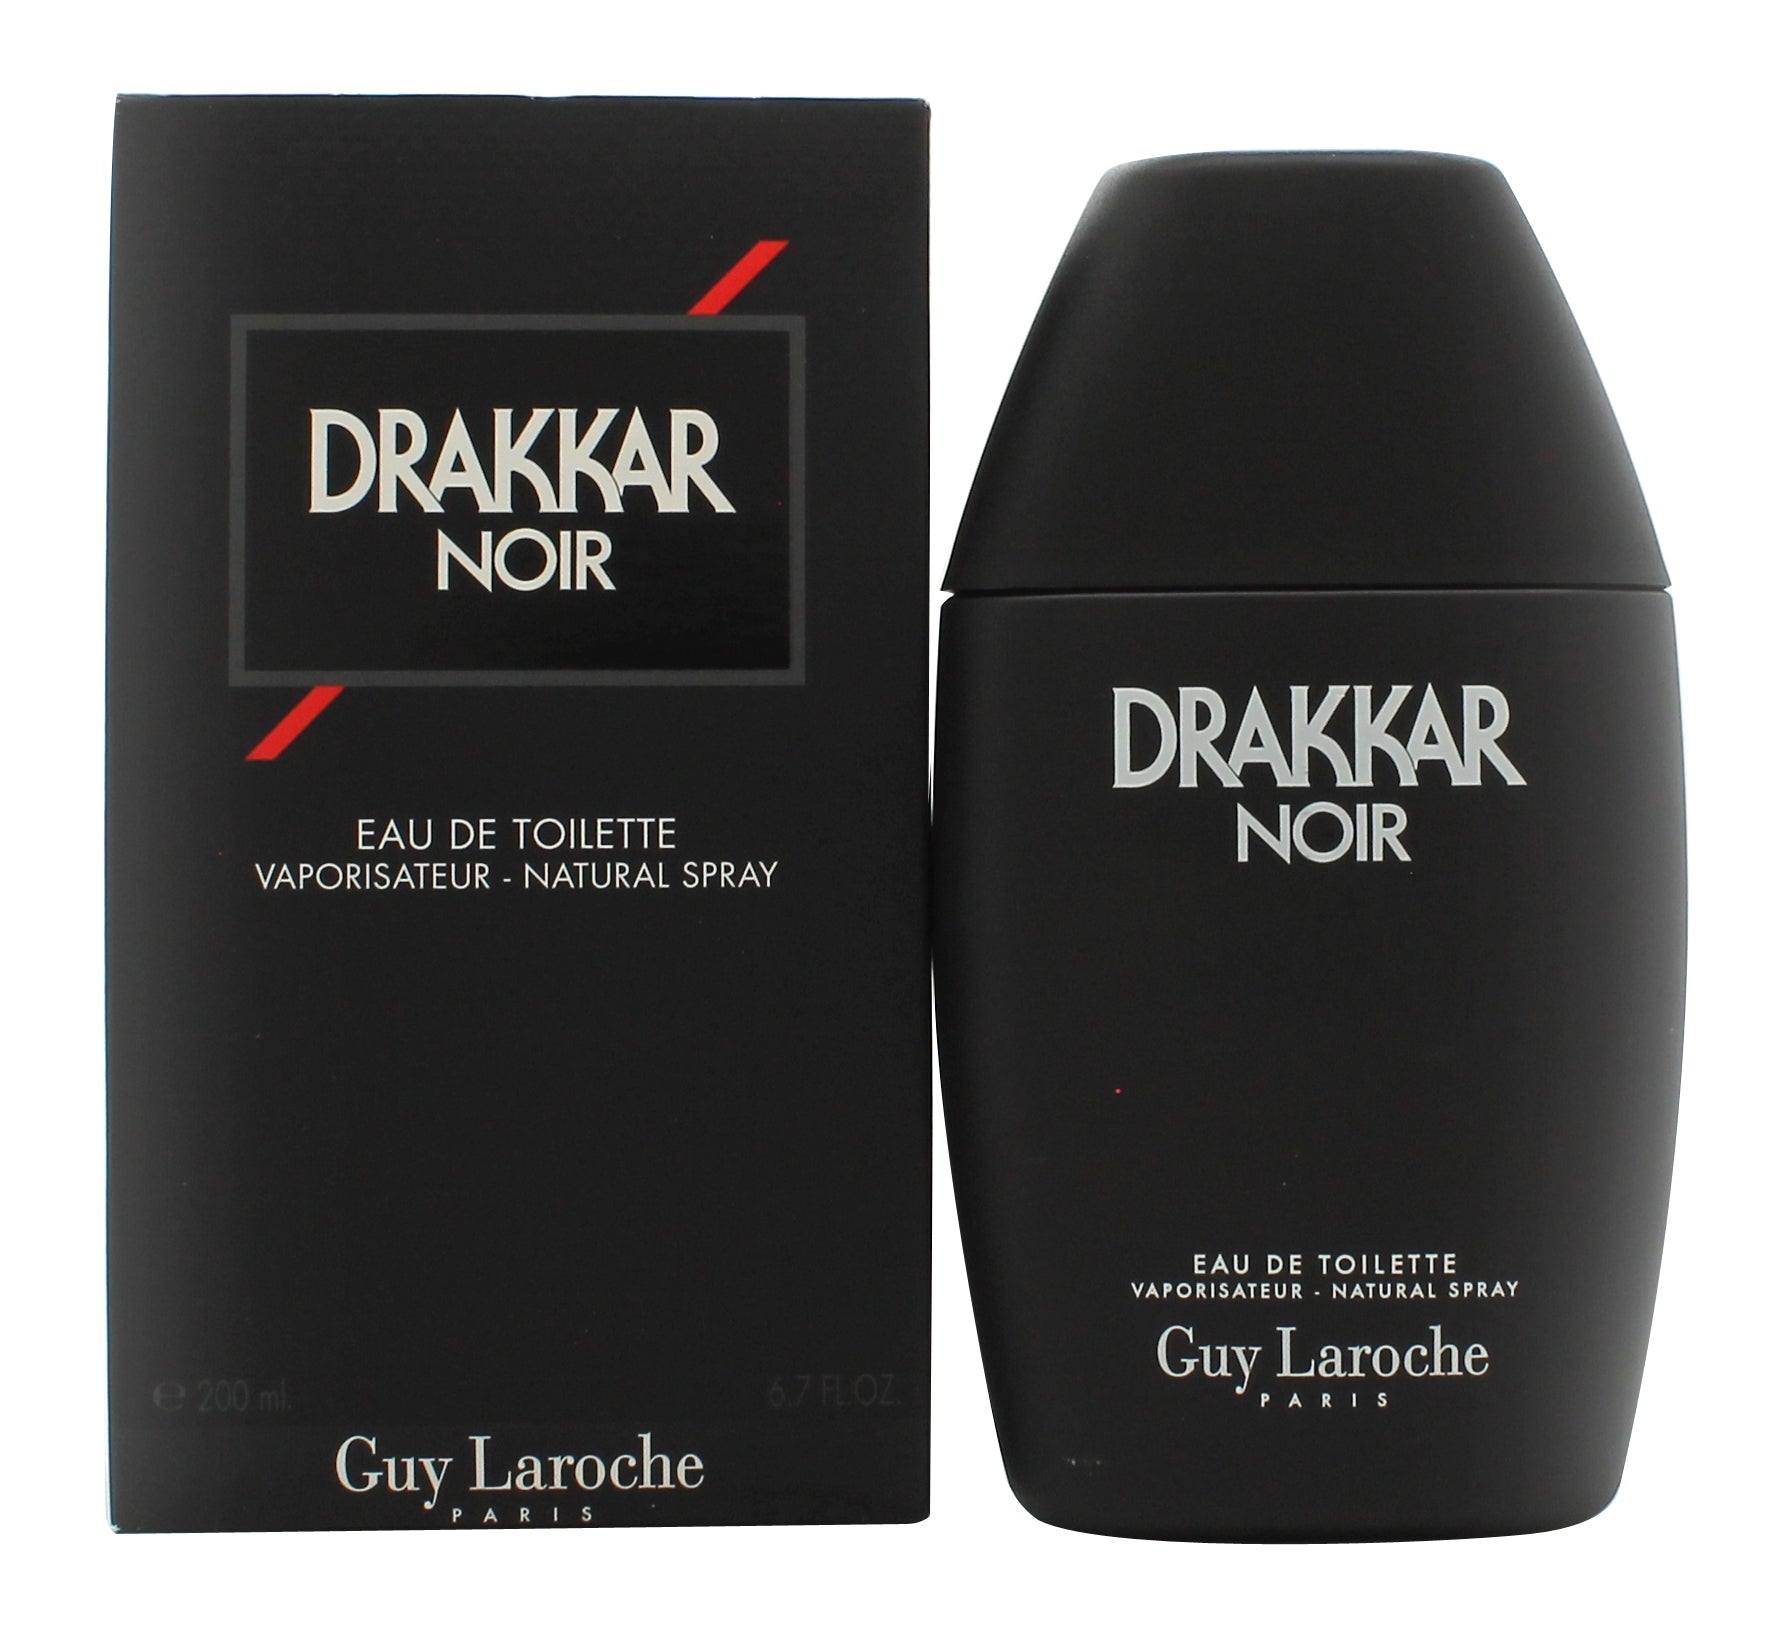 View Guy Laroche Drakkar Noir Eau de Toilette 200ml Spray information